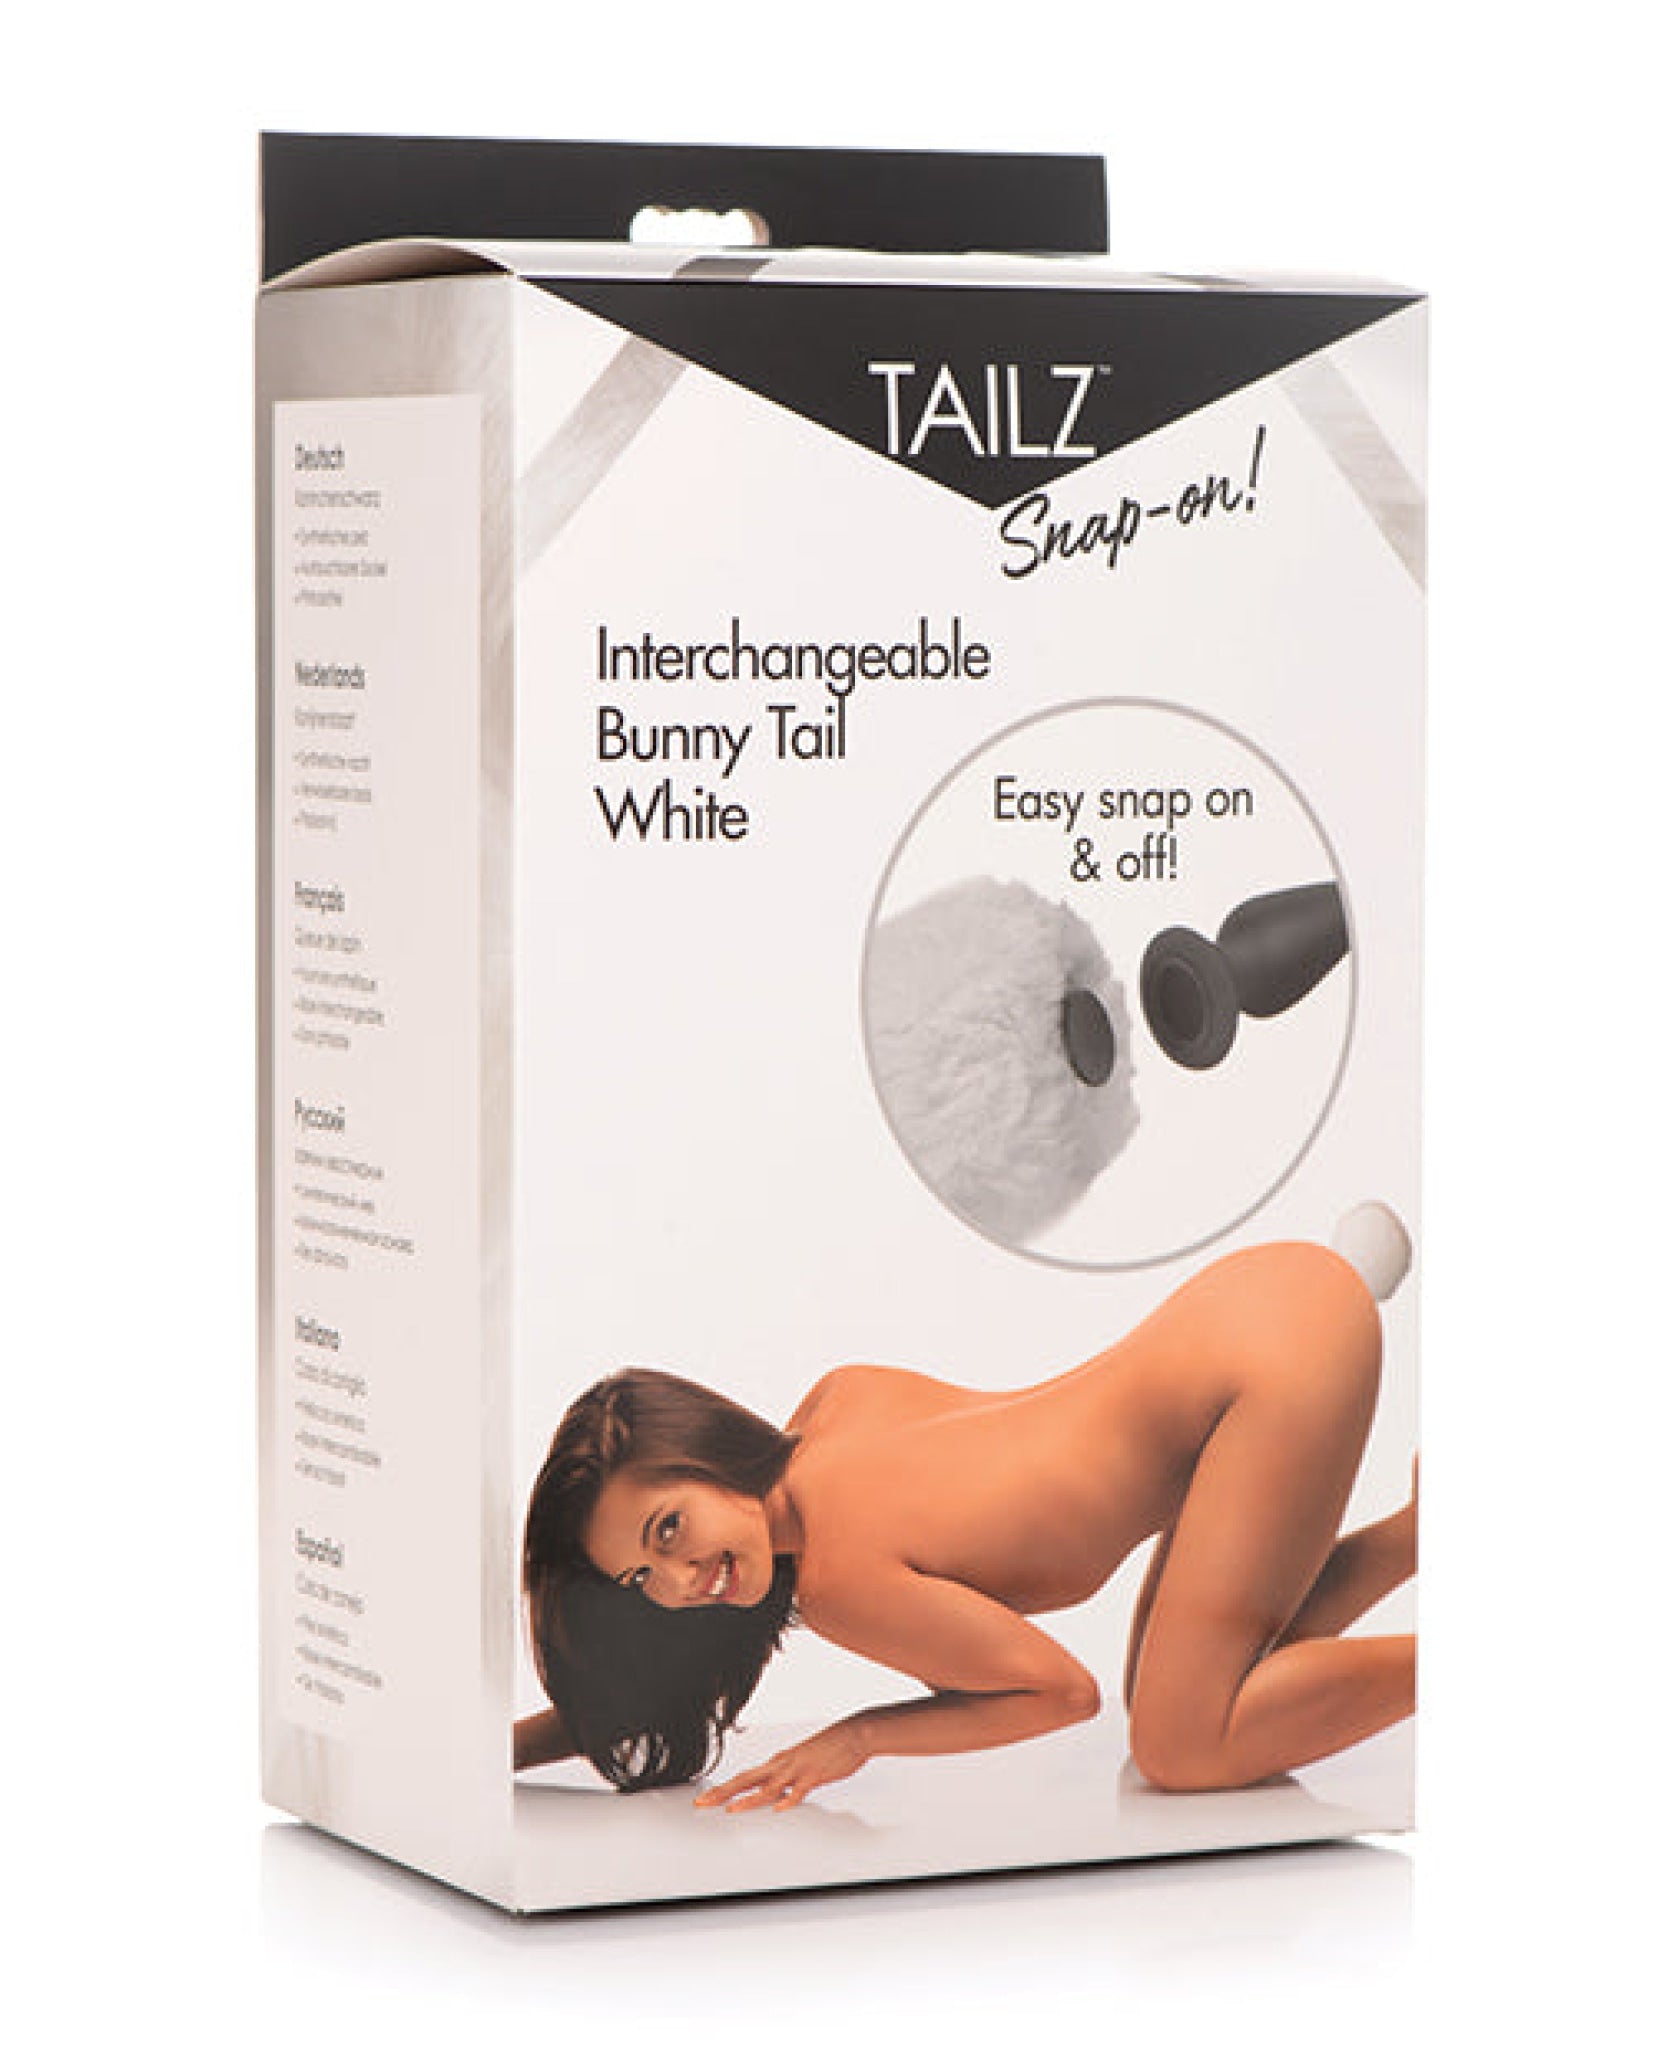 Tailz Interchangeable Bunny Tail Tailz